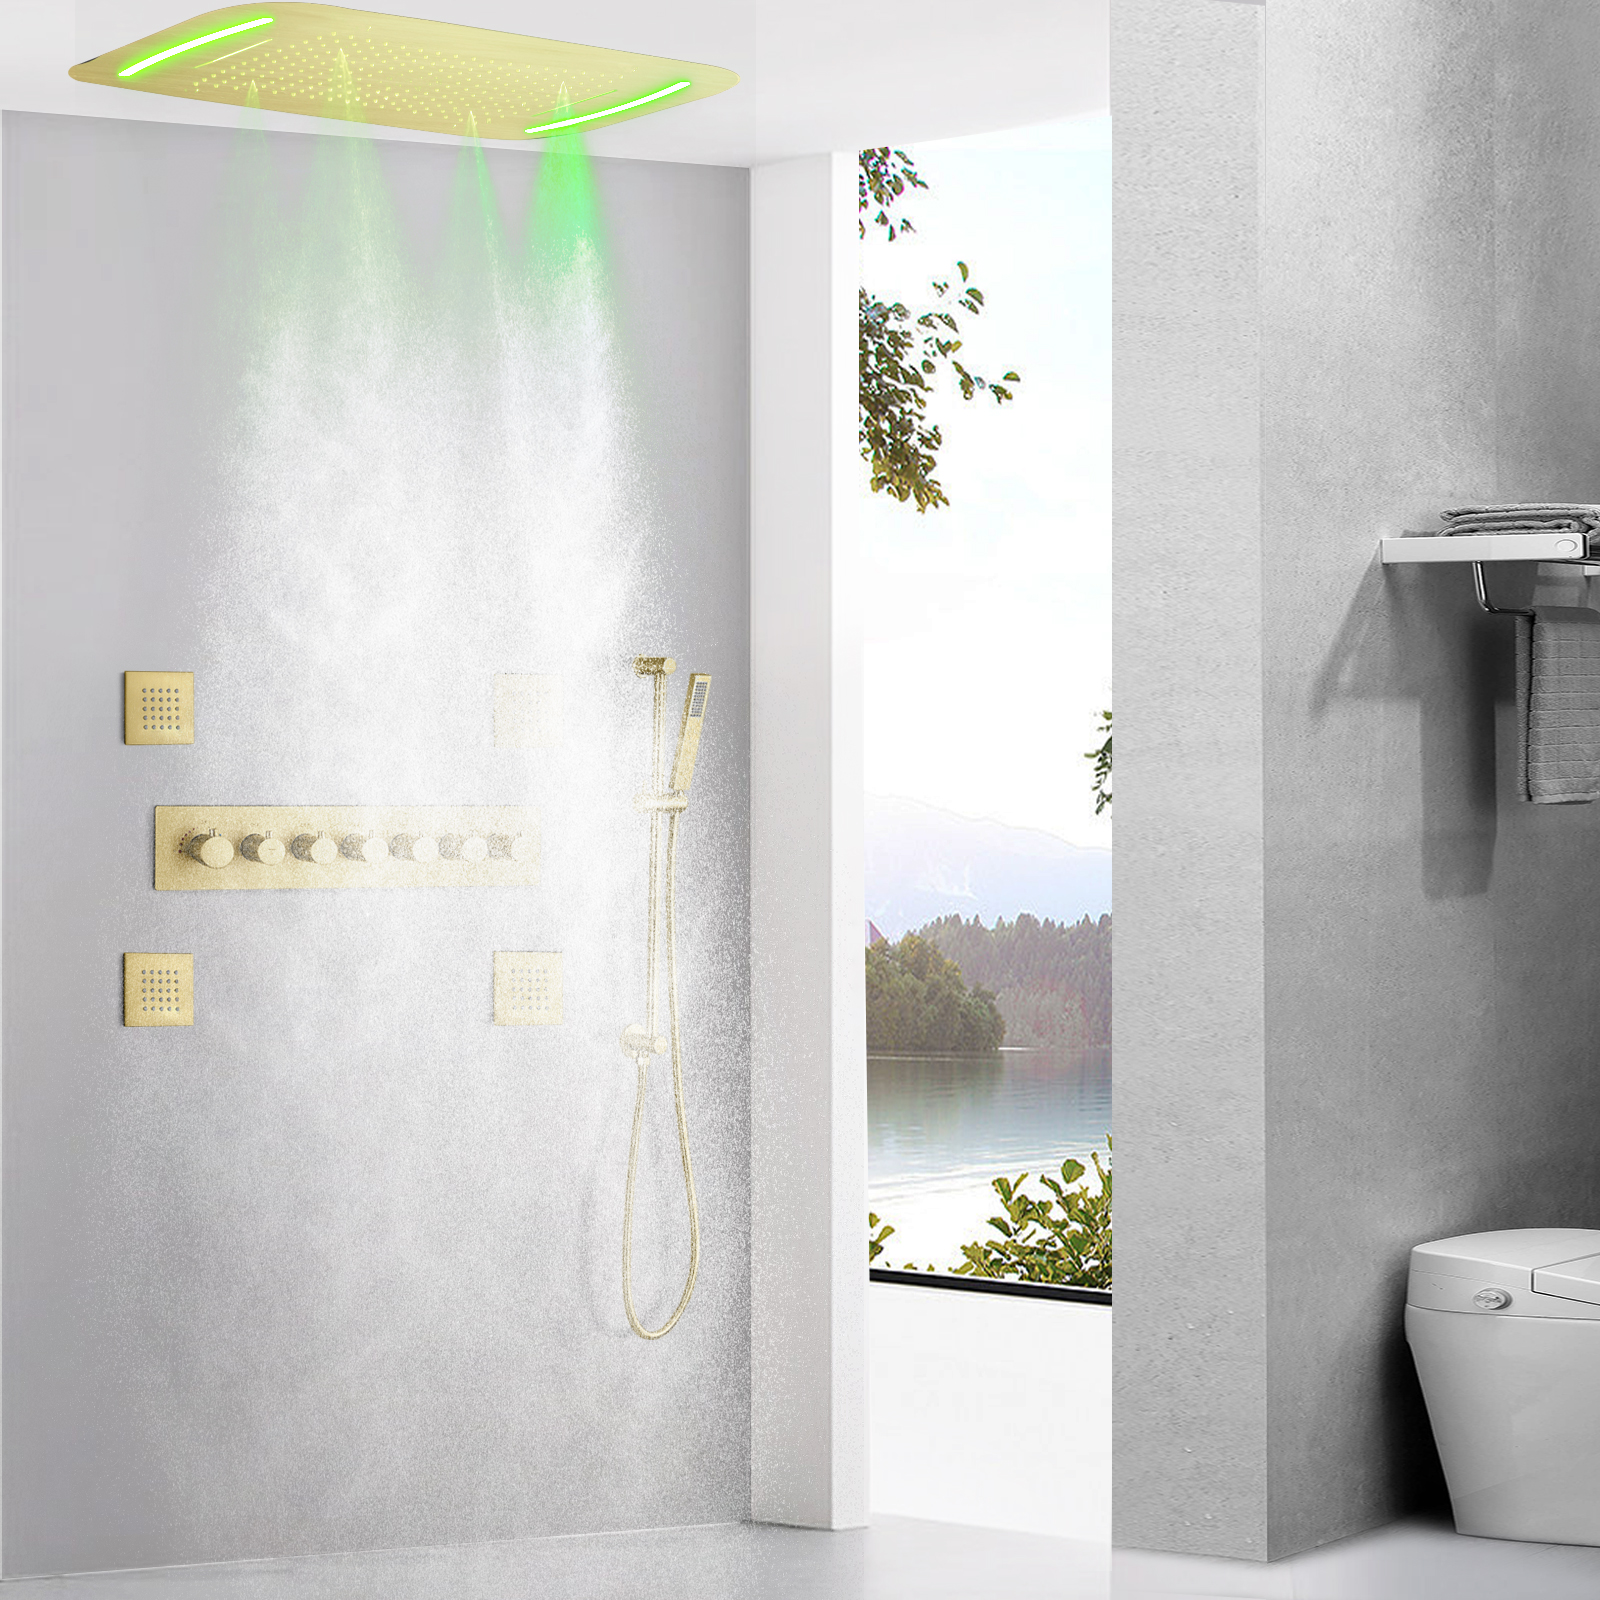 Luxo escovado ouro termostática misturador do chuveiro 710x430mm led banheiro cachoeira escondida cabeça de chuveiro massagem spa